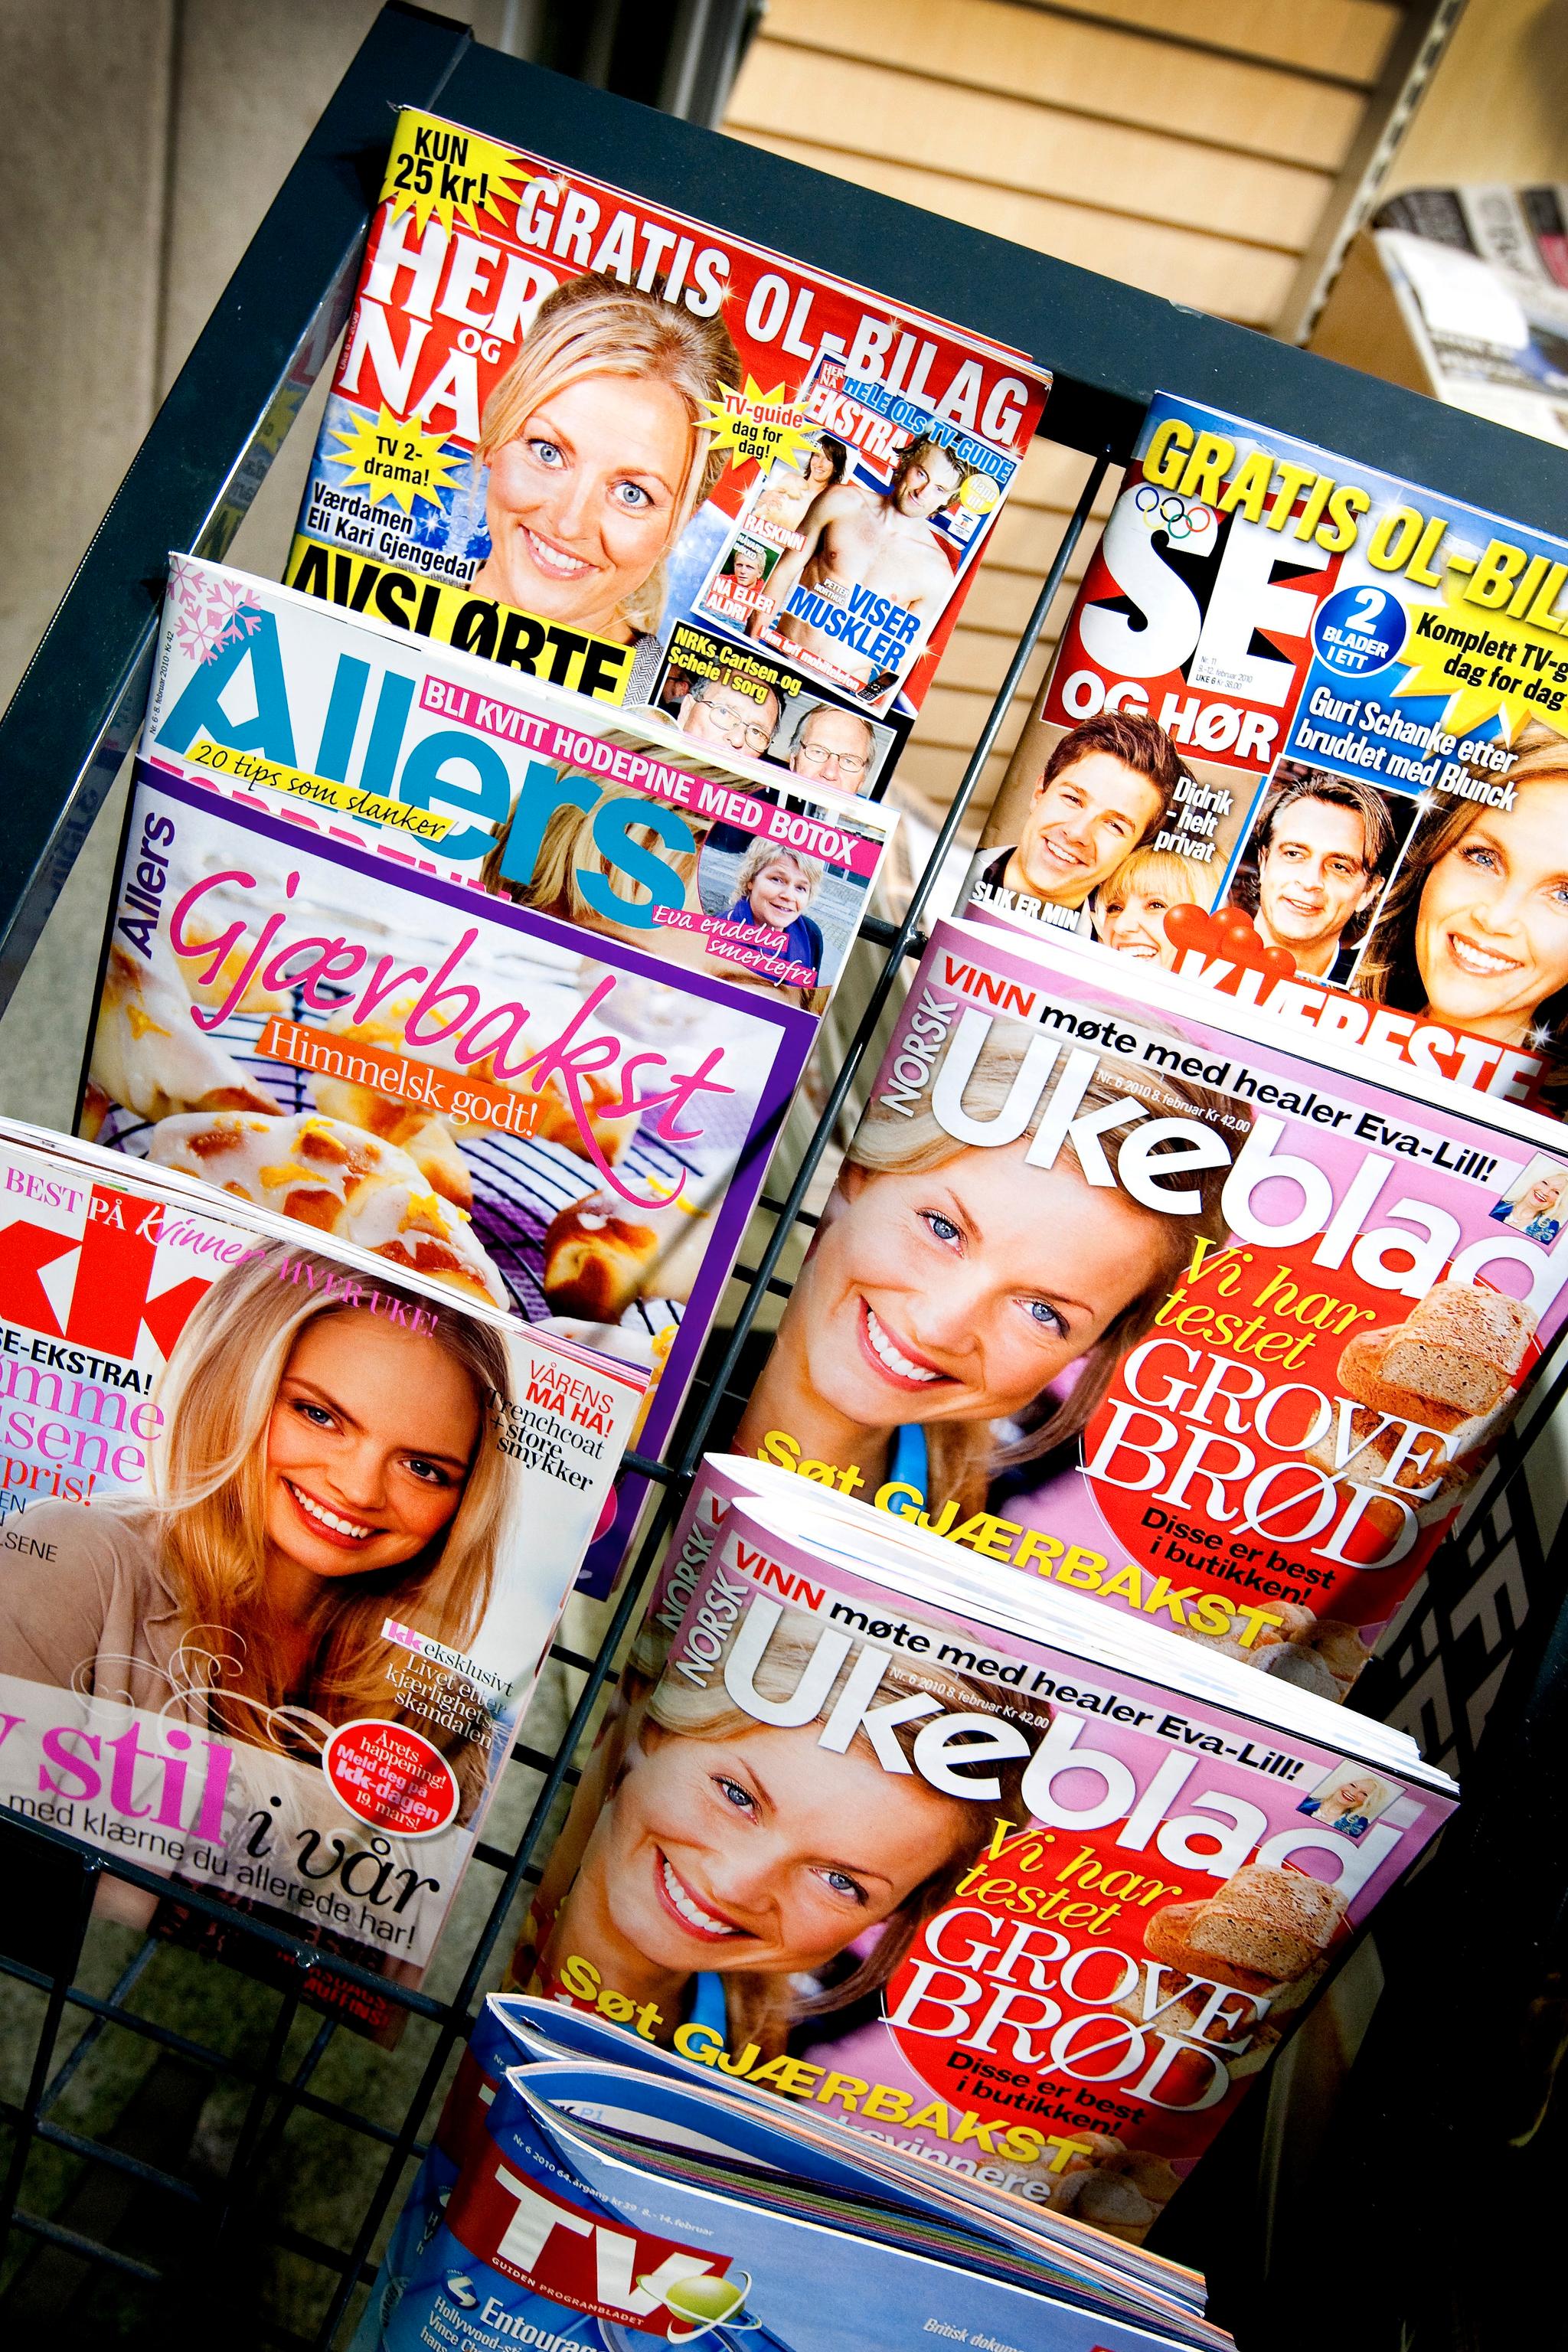 Det er hårreisende at de norske kvinnebladene og magasinene nesten bare inkluderer kvinner med lys hudfarge, skriver Sumaya Jirde Ali (18).